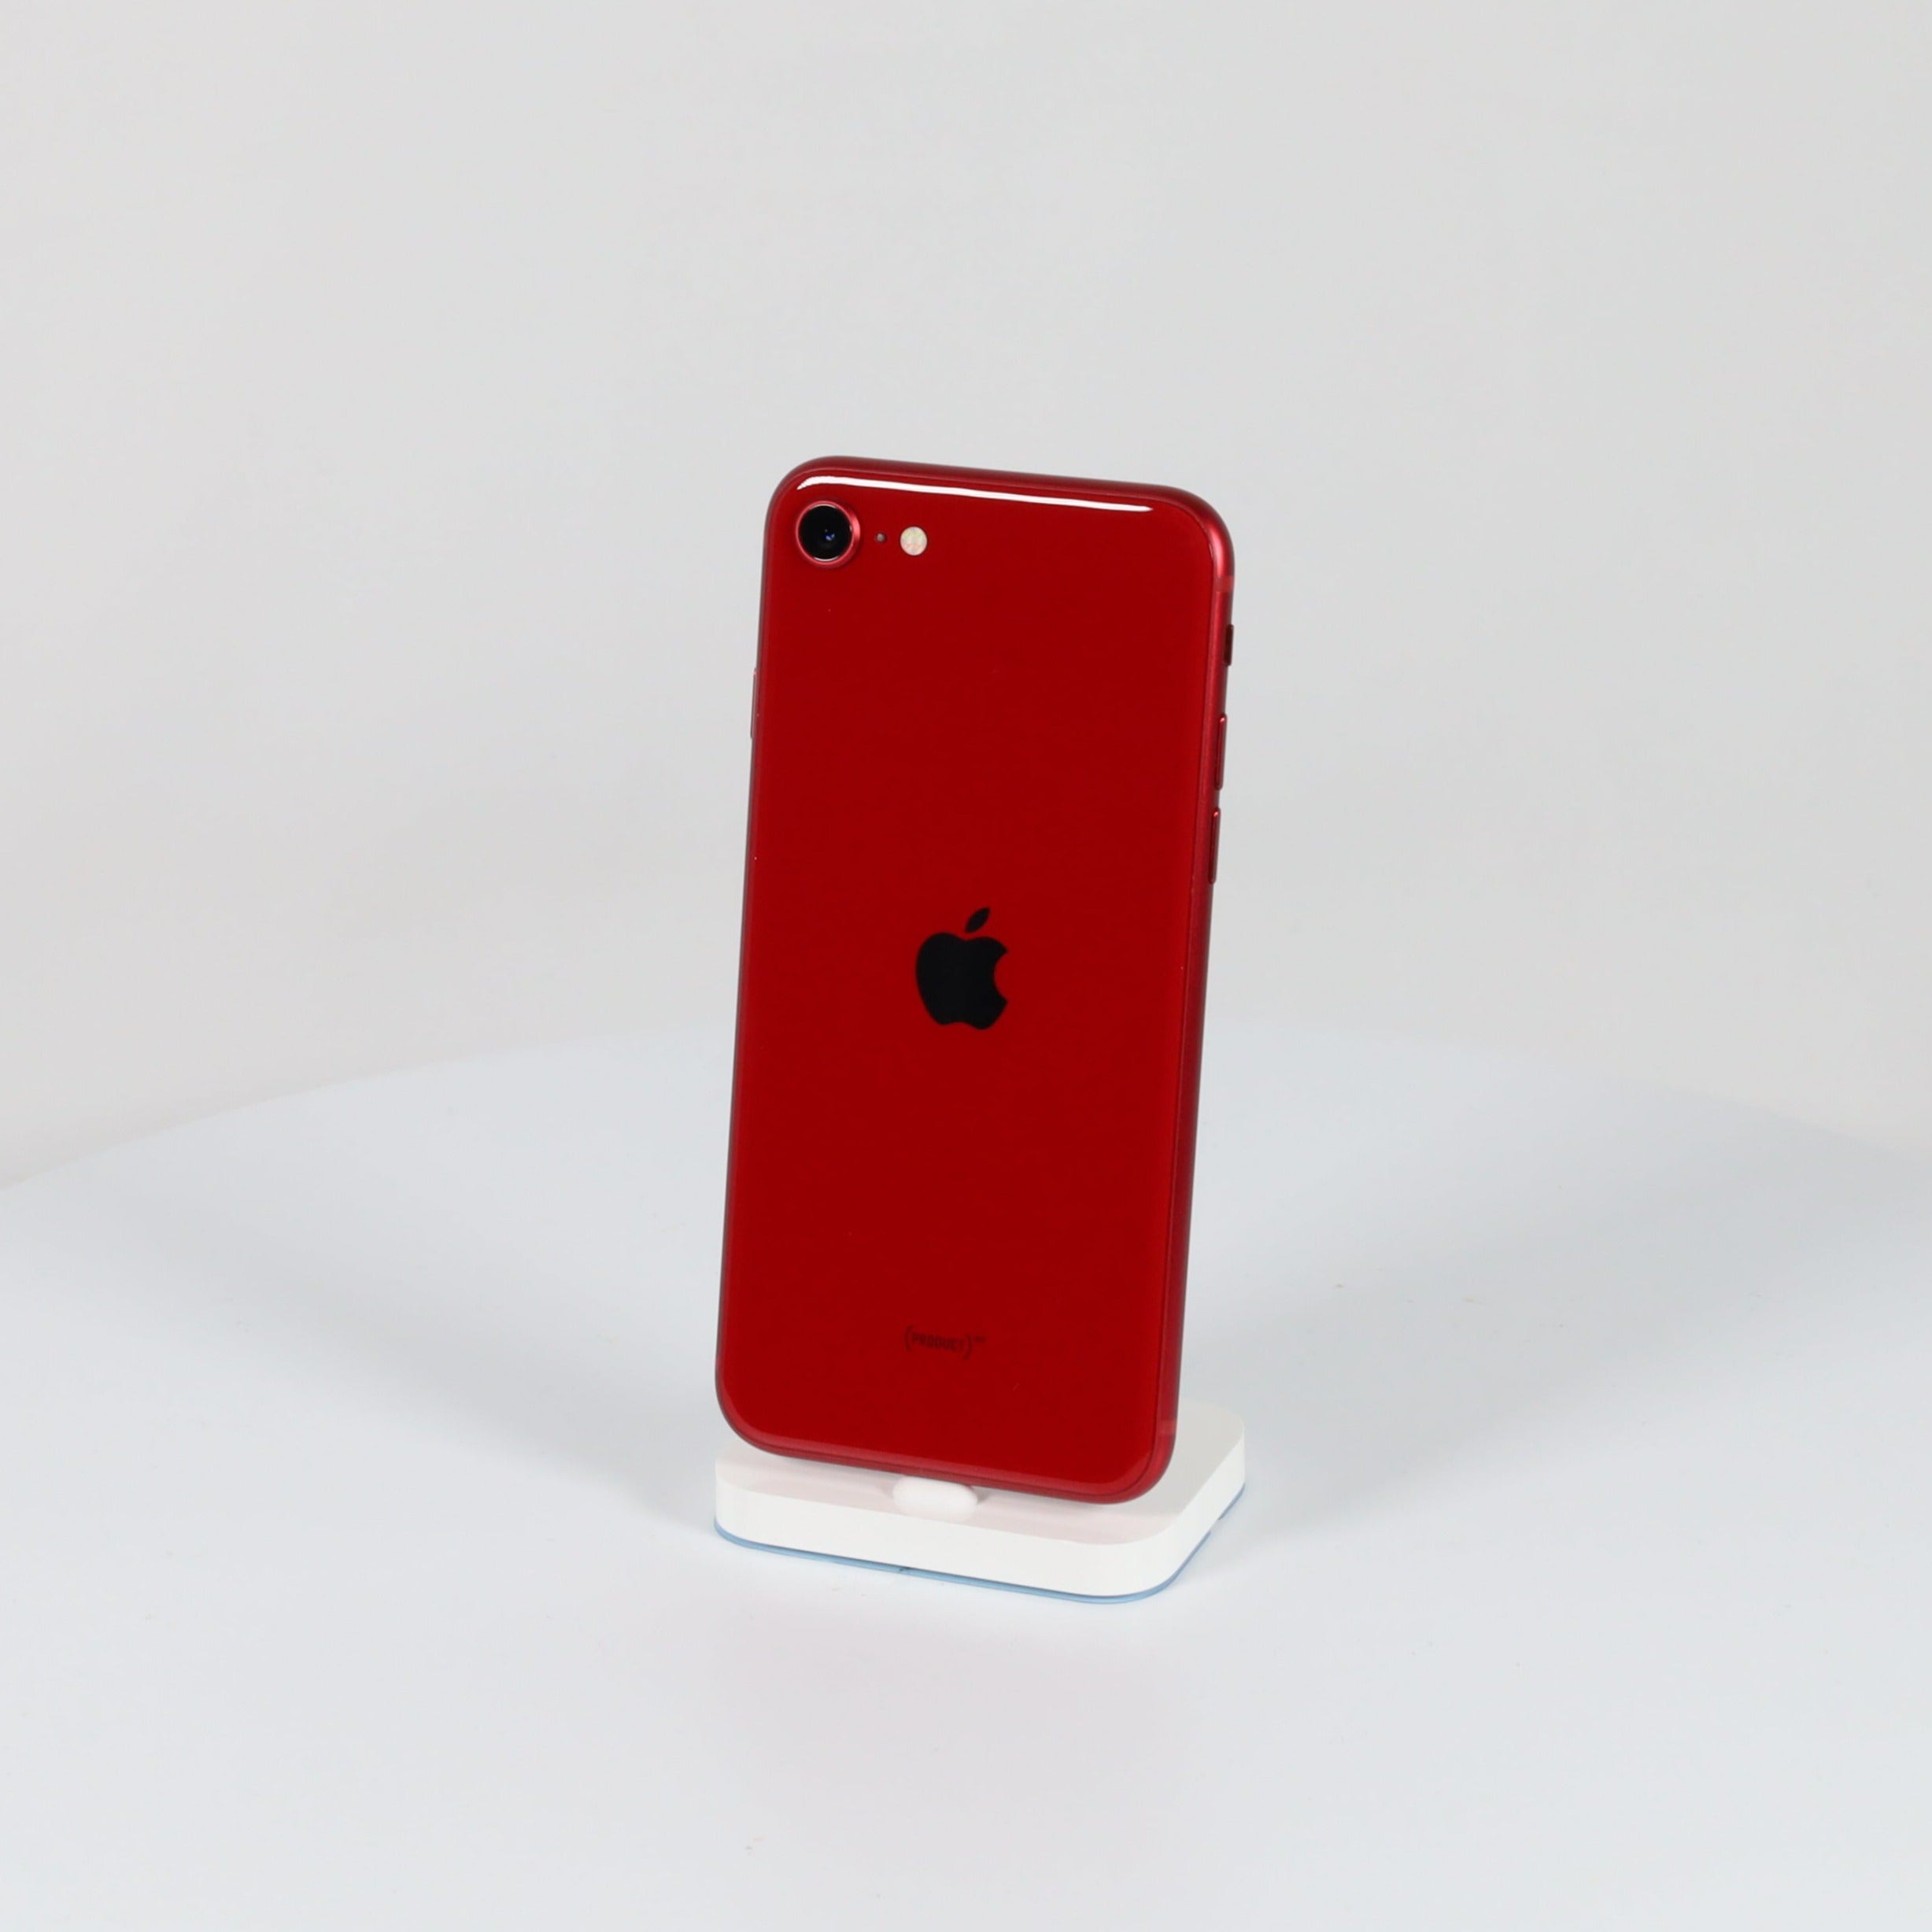 【値引中】Apple iPhoneSE 第3世代64GB PRODUCT RED